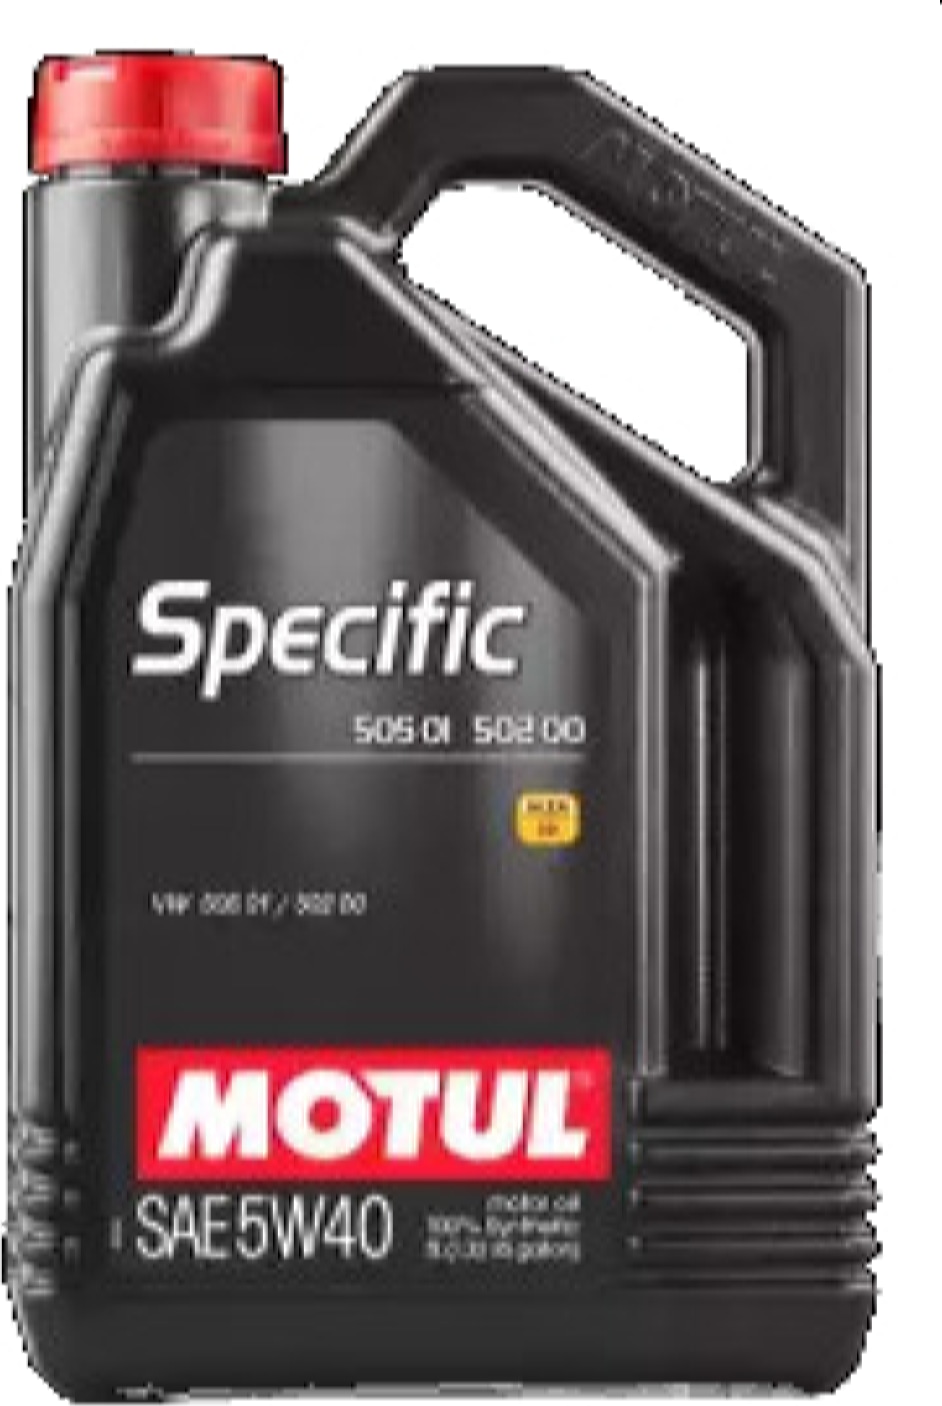 MOTUL 101575 Motul 5w40 (5l) specific vw масло моторное (синт.) vw 505.01/502.00/505.00